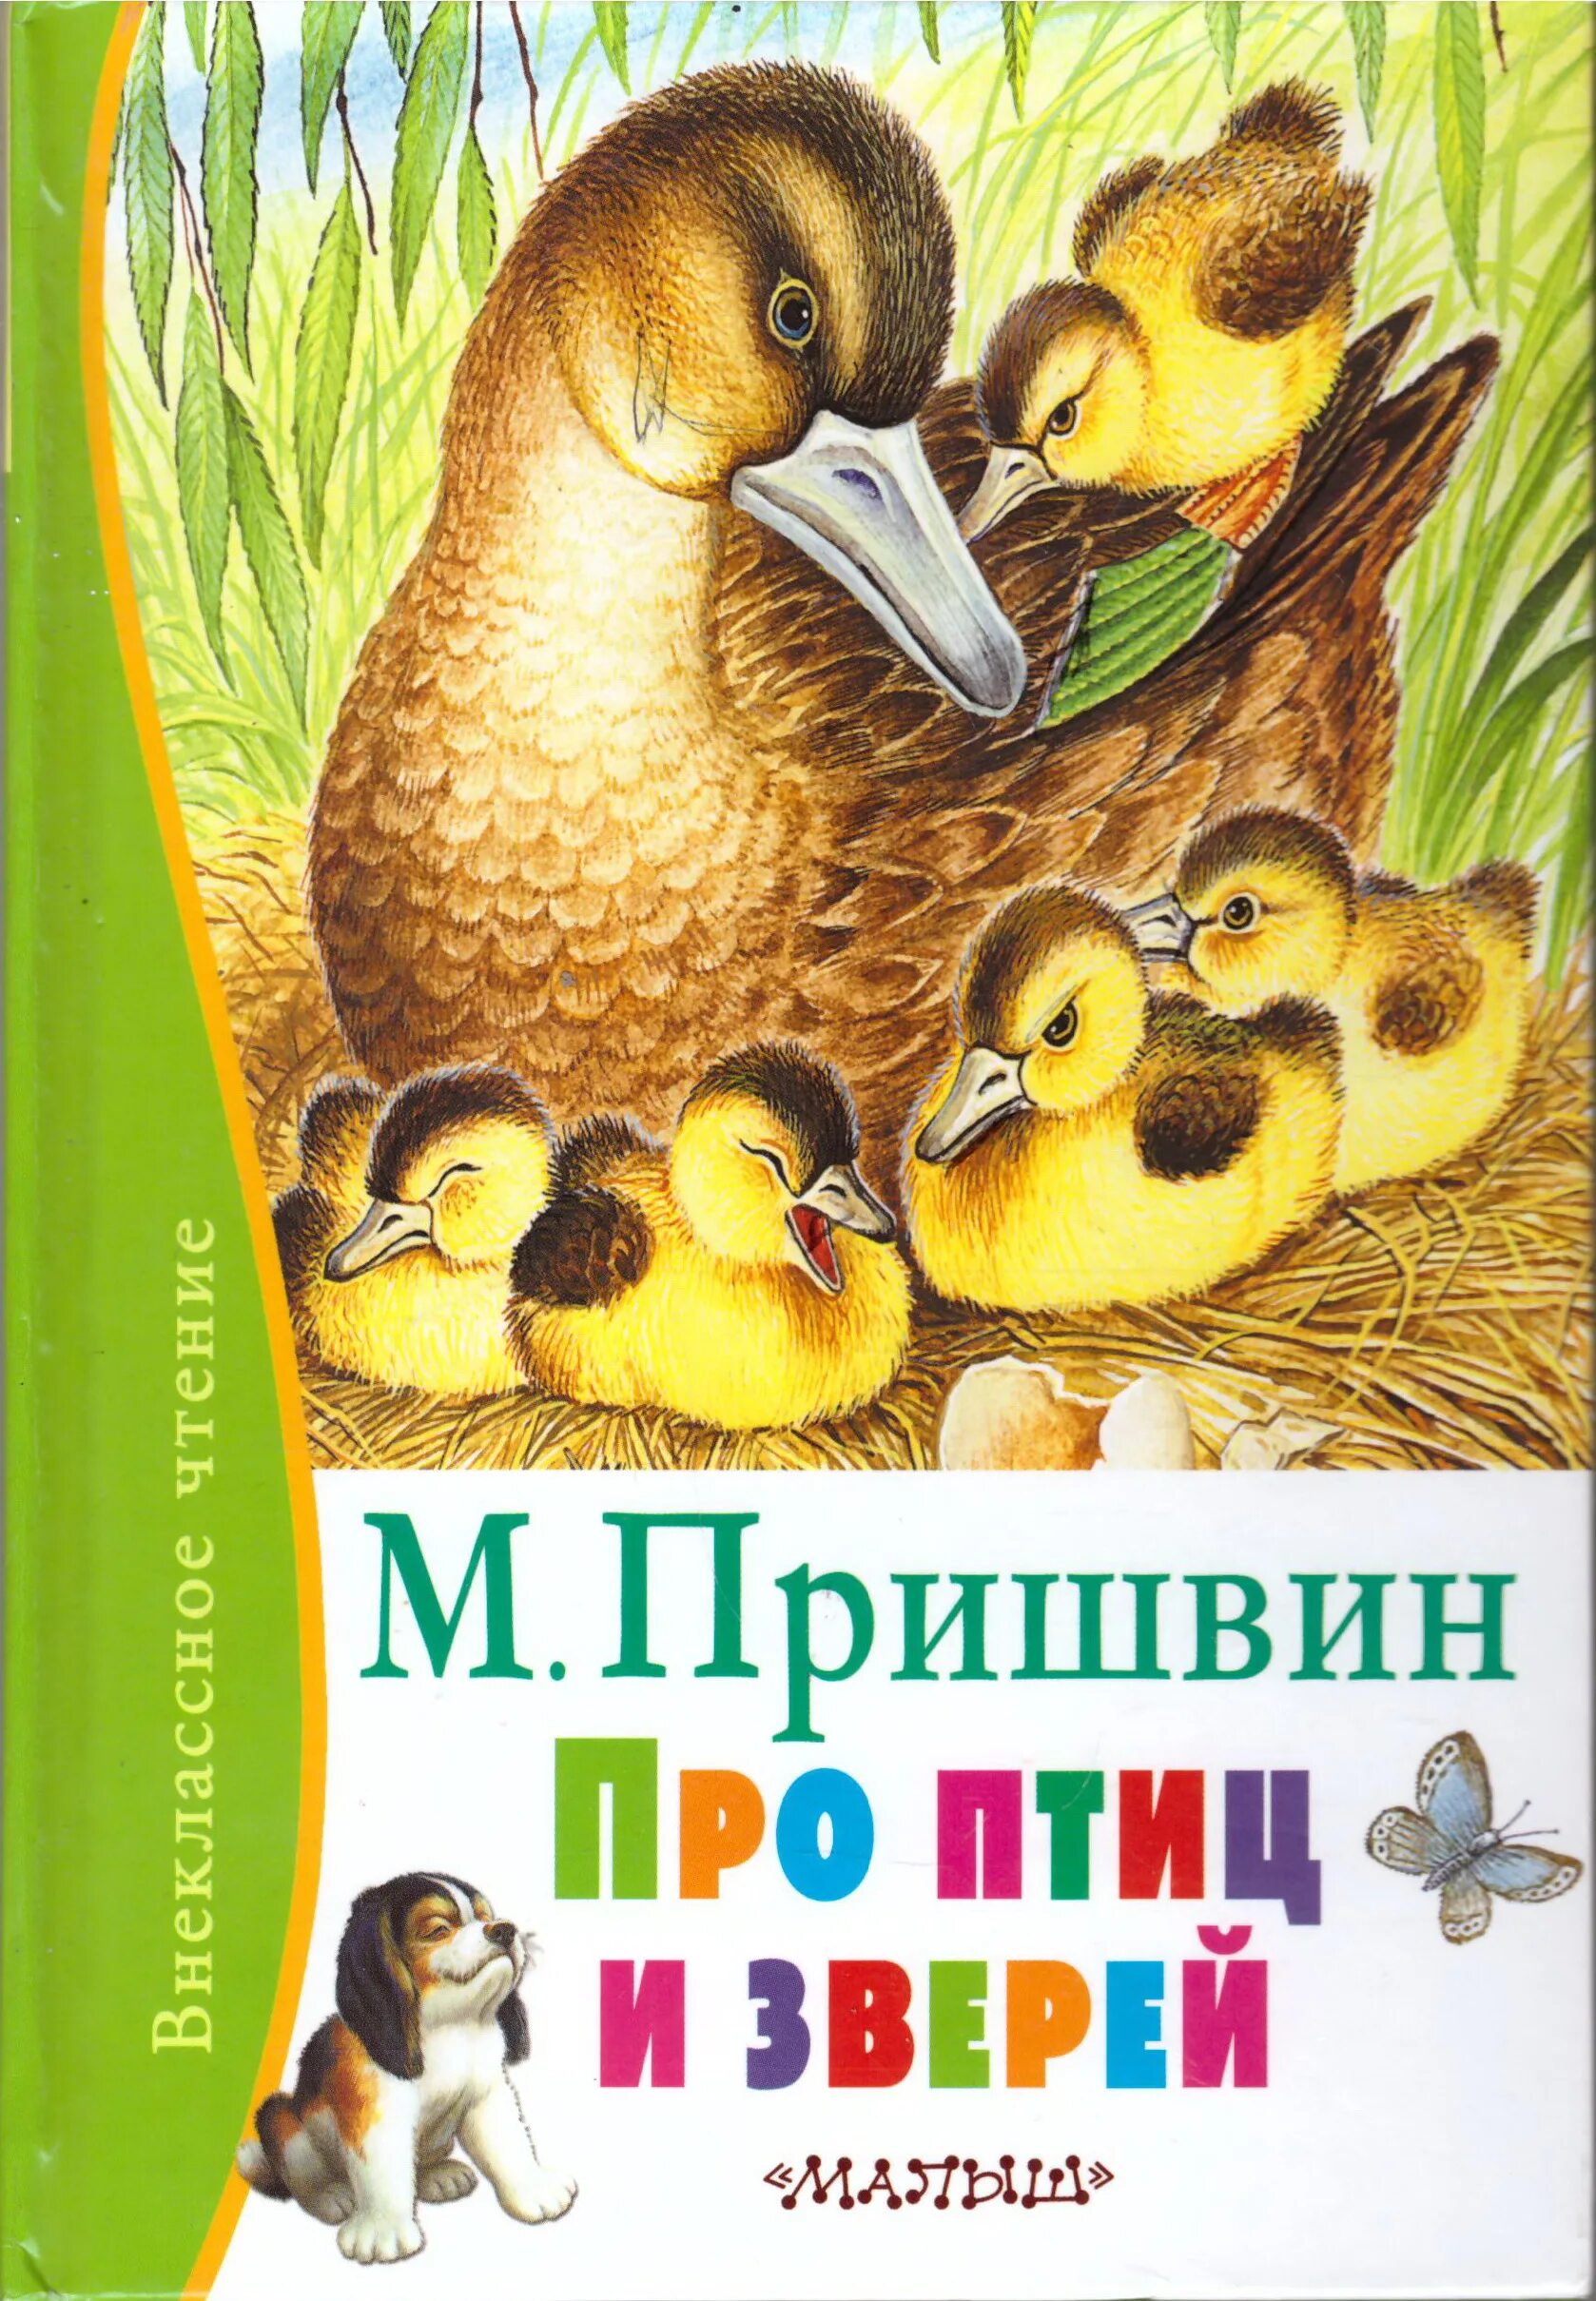 Пришвин про птиц и зверей книга. Обложка книги о животных. Про людей зверей и птиц